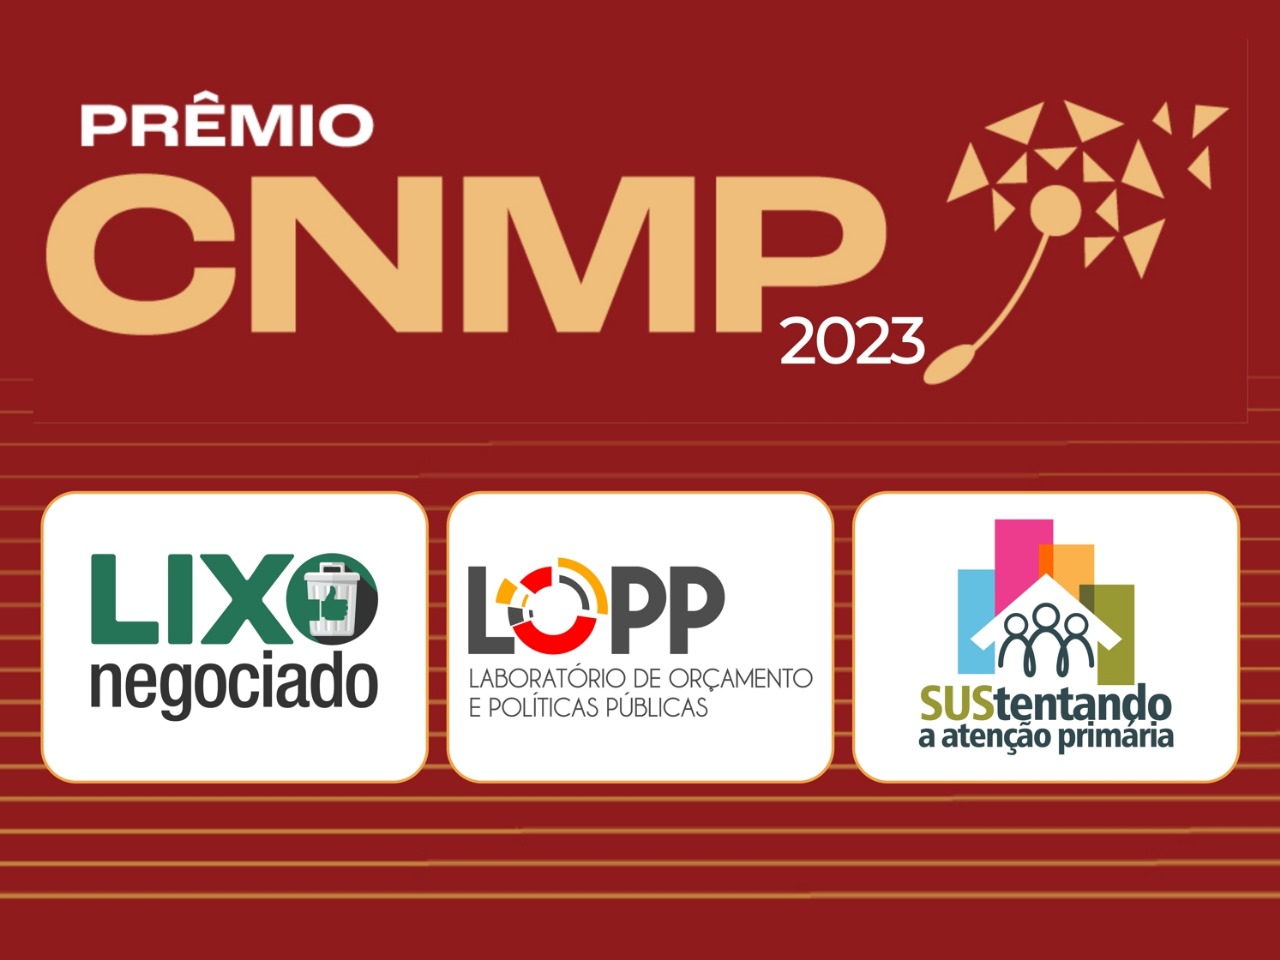 Imagem com a arte do Prêmio CNMP 2023 e os logos dos projetos finalistas Lixo Negociado, Lopp e SUStentando a Atenção Primária.